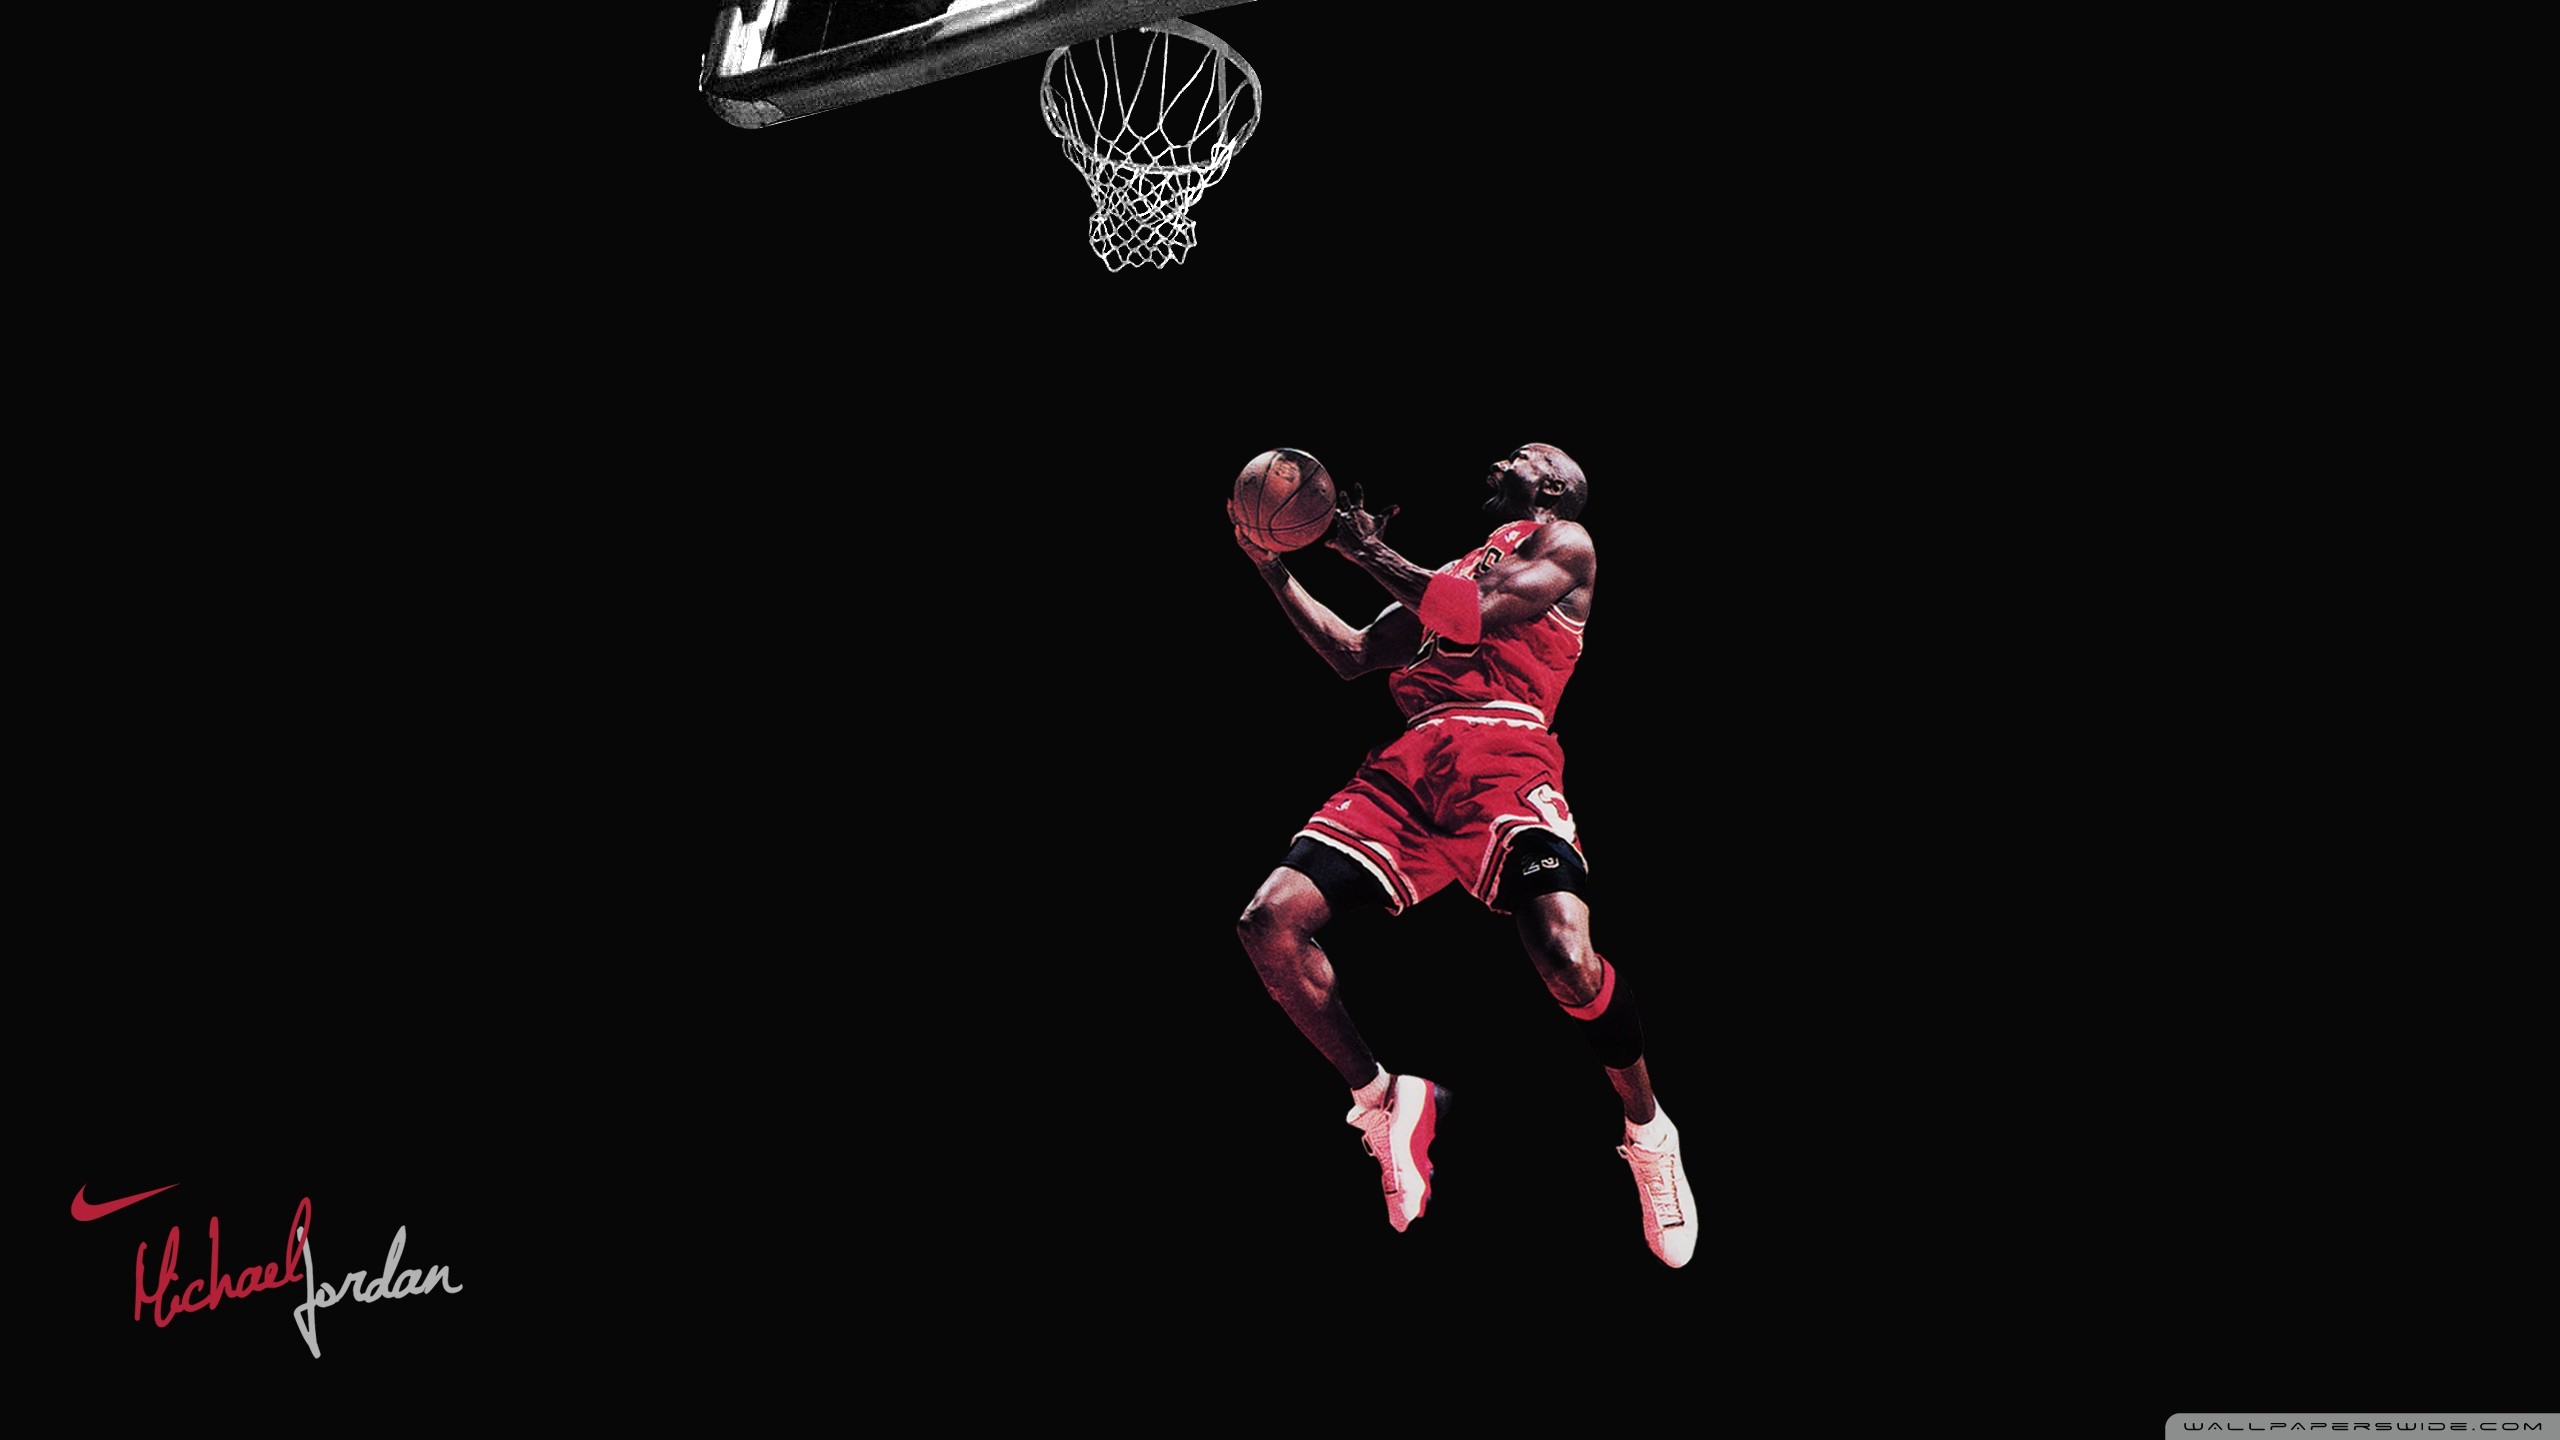 Download Professional NBA Players Kobe Bryant And Michael Jordan  Illustration Wallpaper | Wallpapers.com